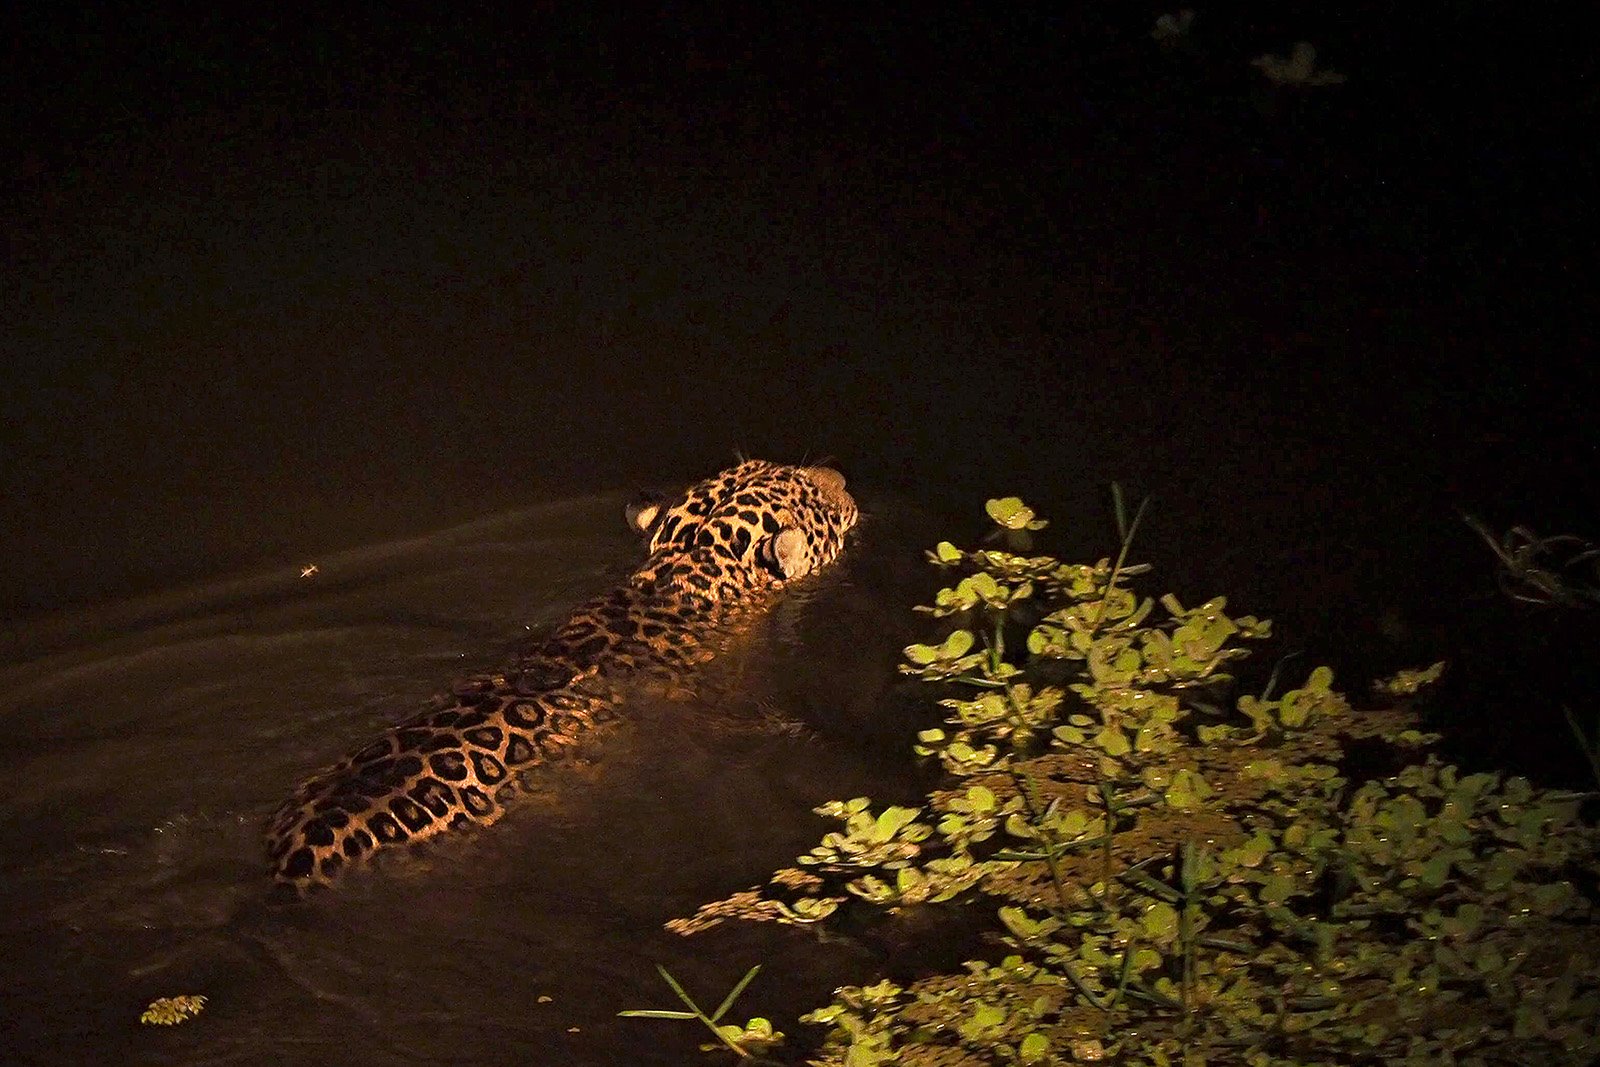 Un jaguar (Panthera onca) atraviesa a nado un río a primera hora de la noche en busca de una presa en el Pantanal, Brasil.